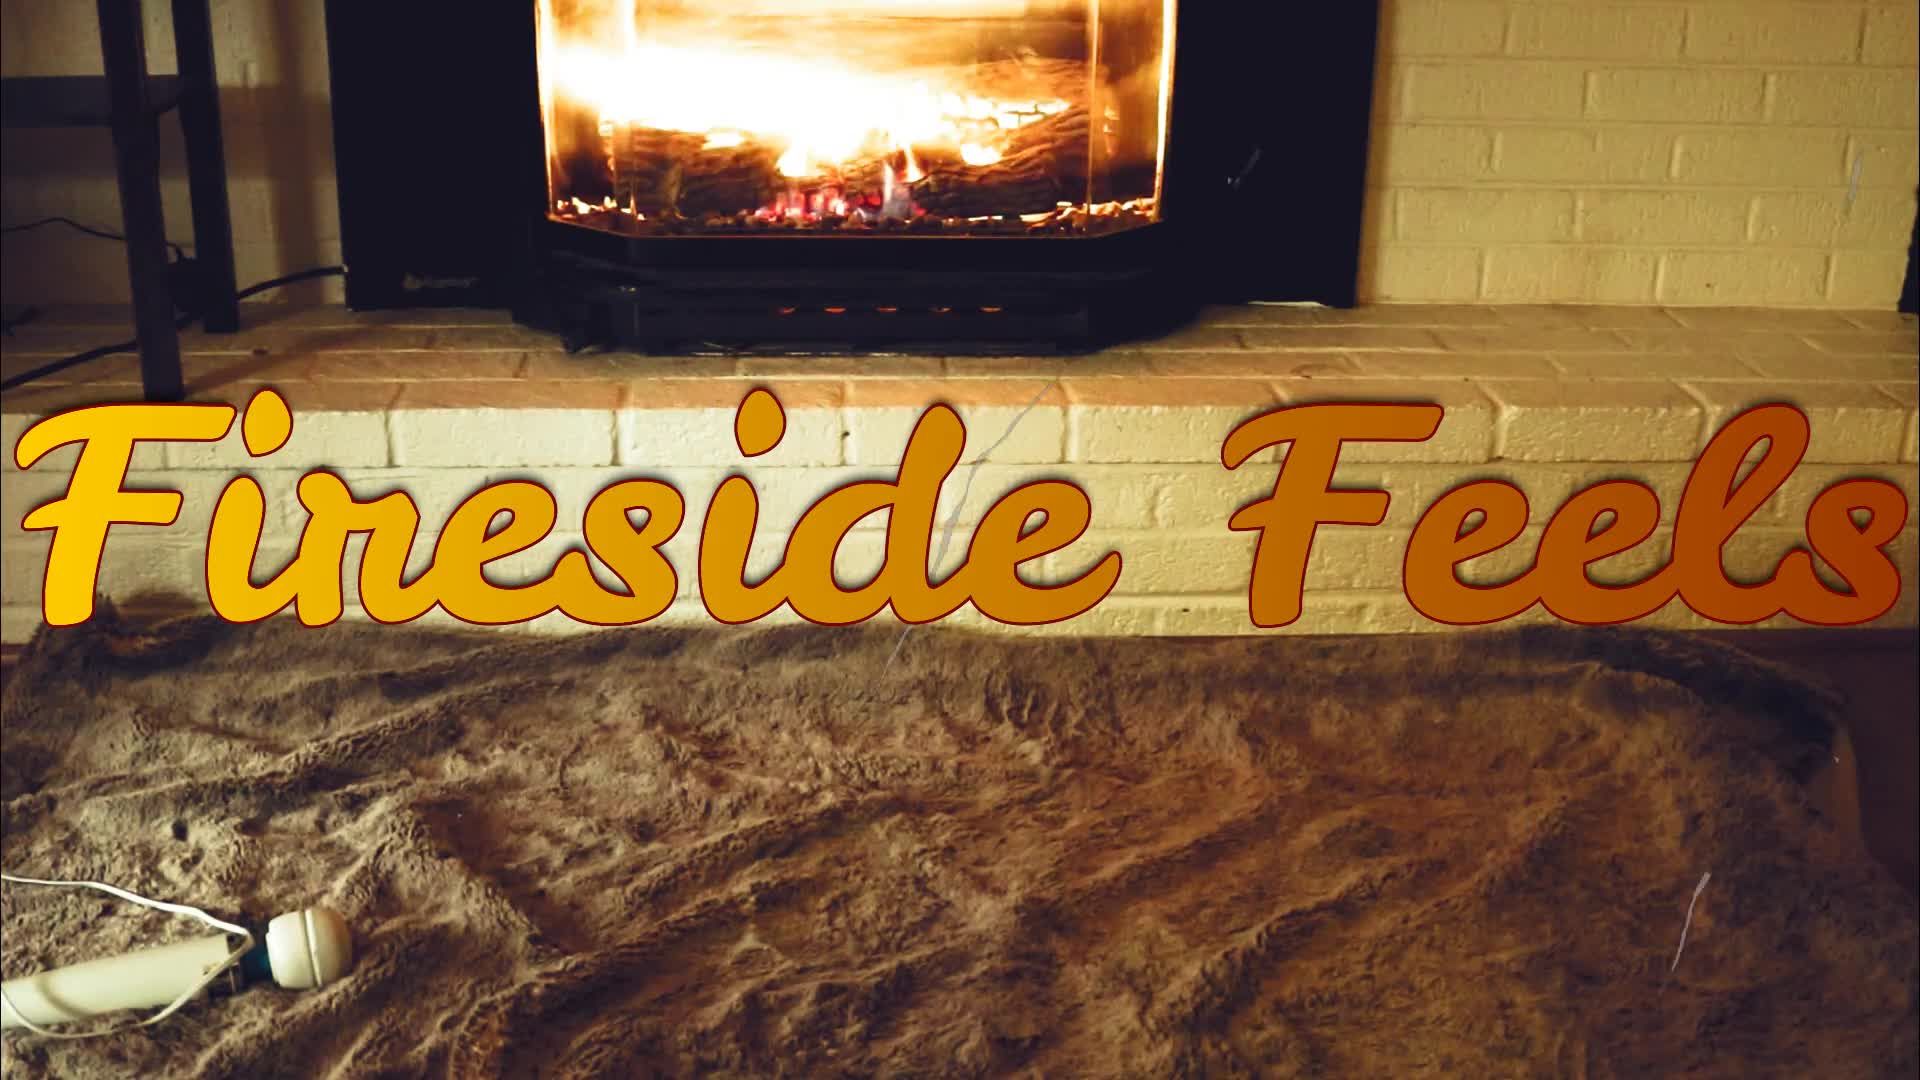 Fireside feels